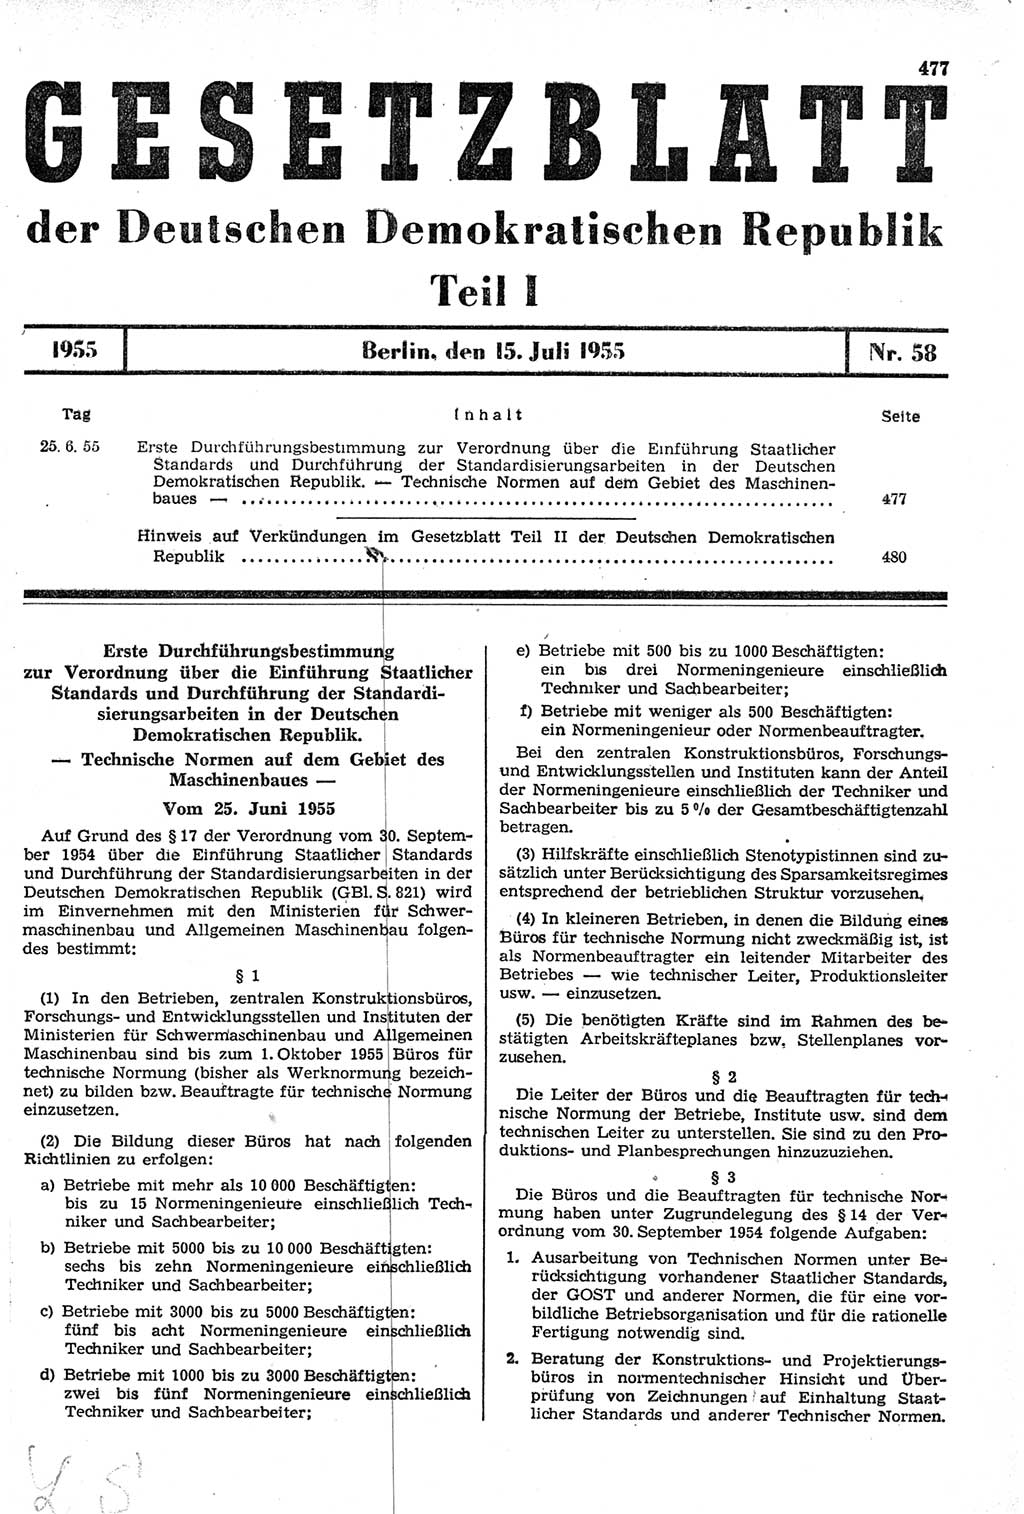 Gesetzblatt (GBl.) der Deutschen Demokratischen Republik (DDR) Teil Ⅰ 1955, Seite 477 (GBl. DDR Ⅰ 1955, S. 477)